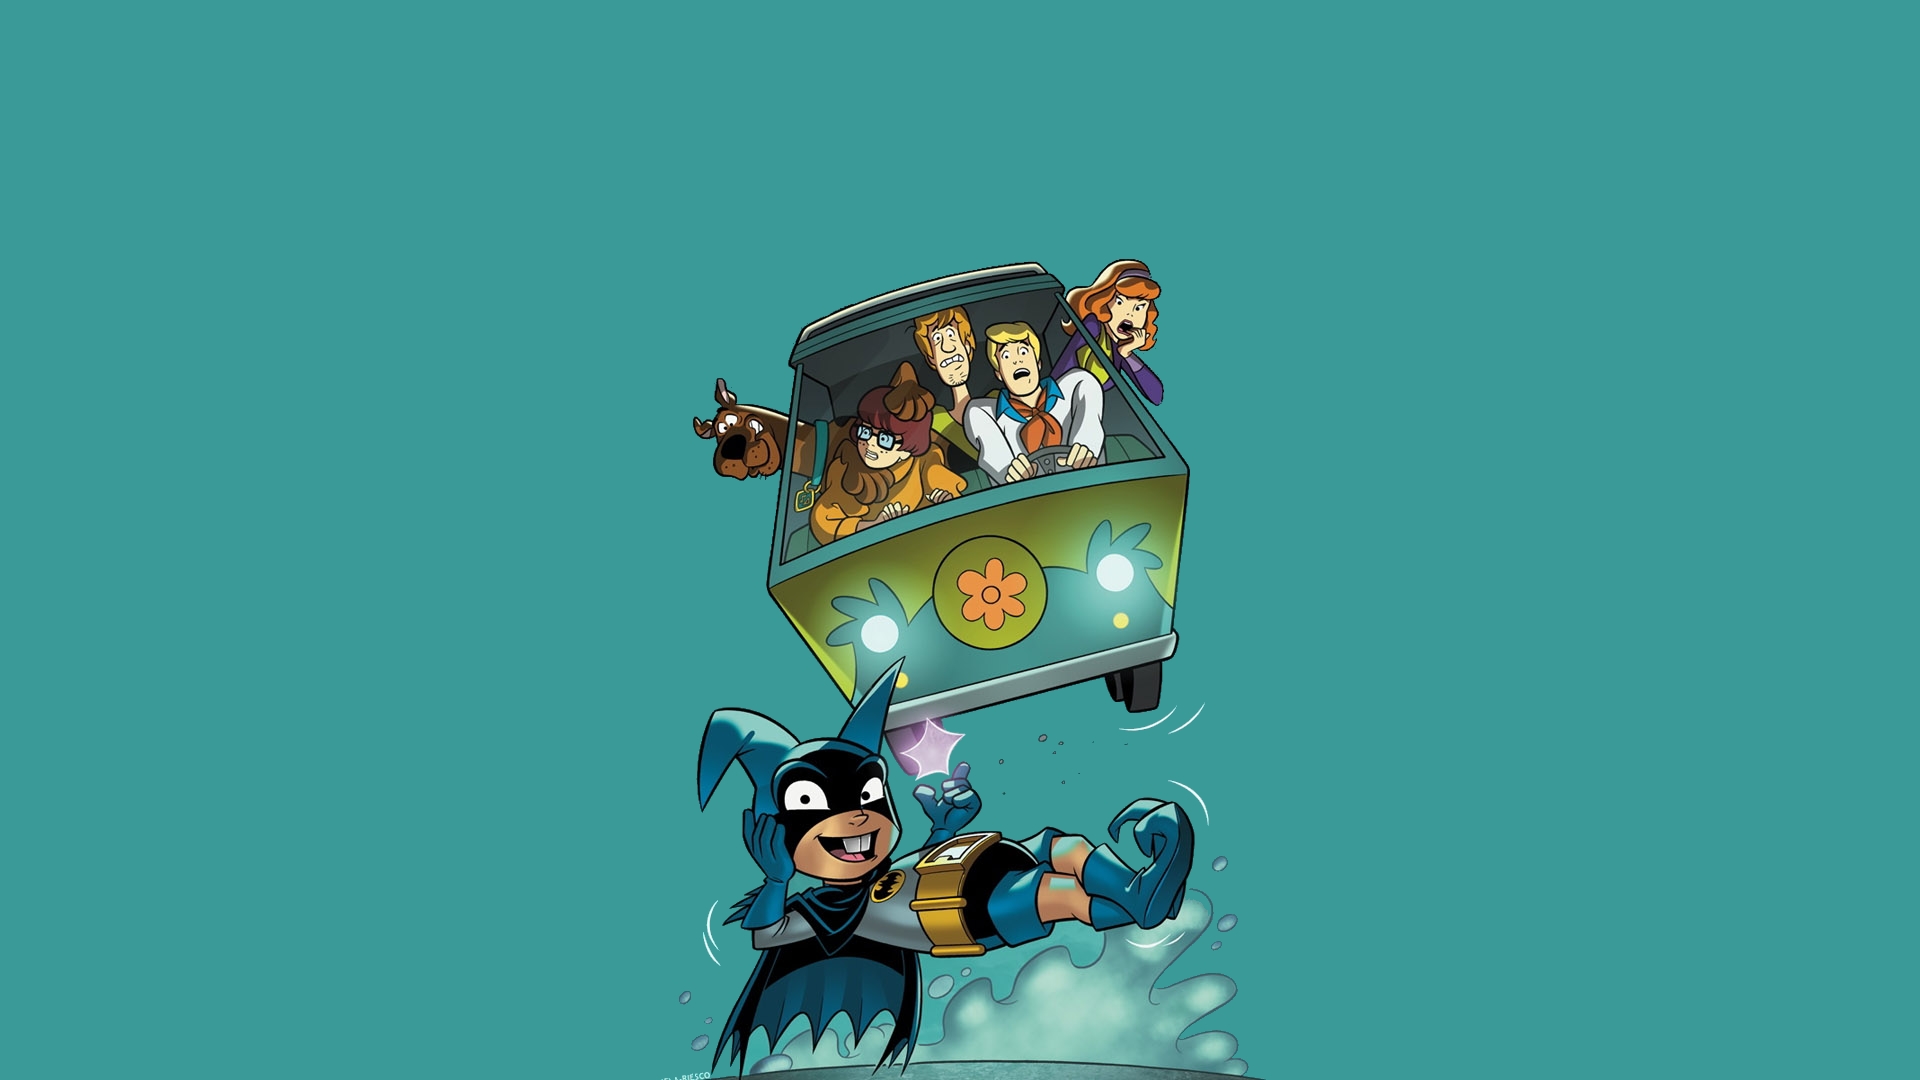 Скачать обои бесплатно Команда, Комиксы, Бэтмен, Скуби Ду картинка на рабочий стол ПК